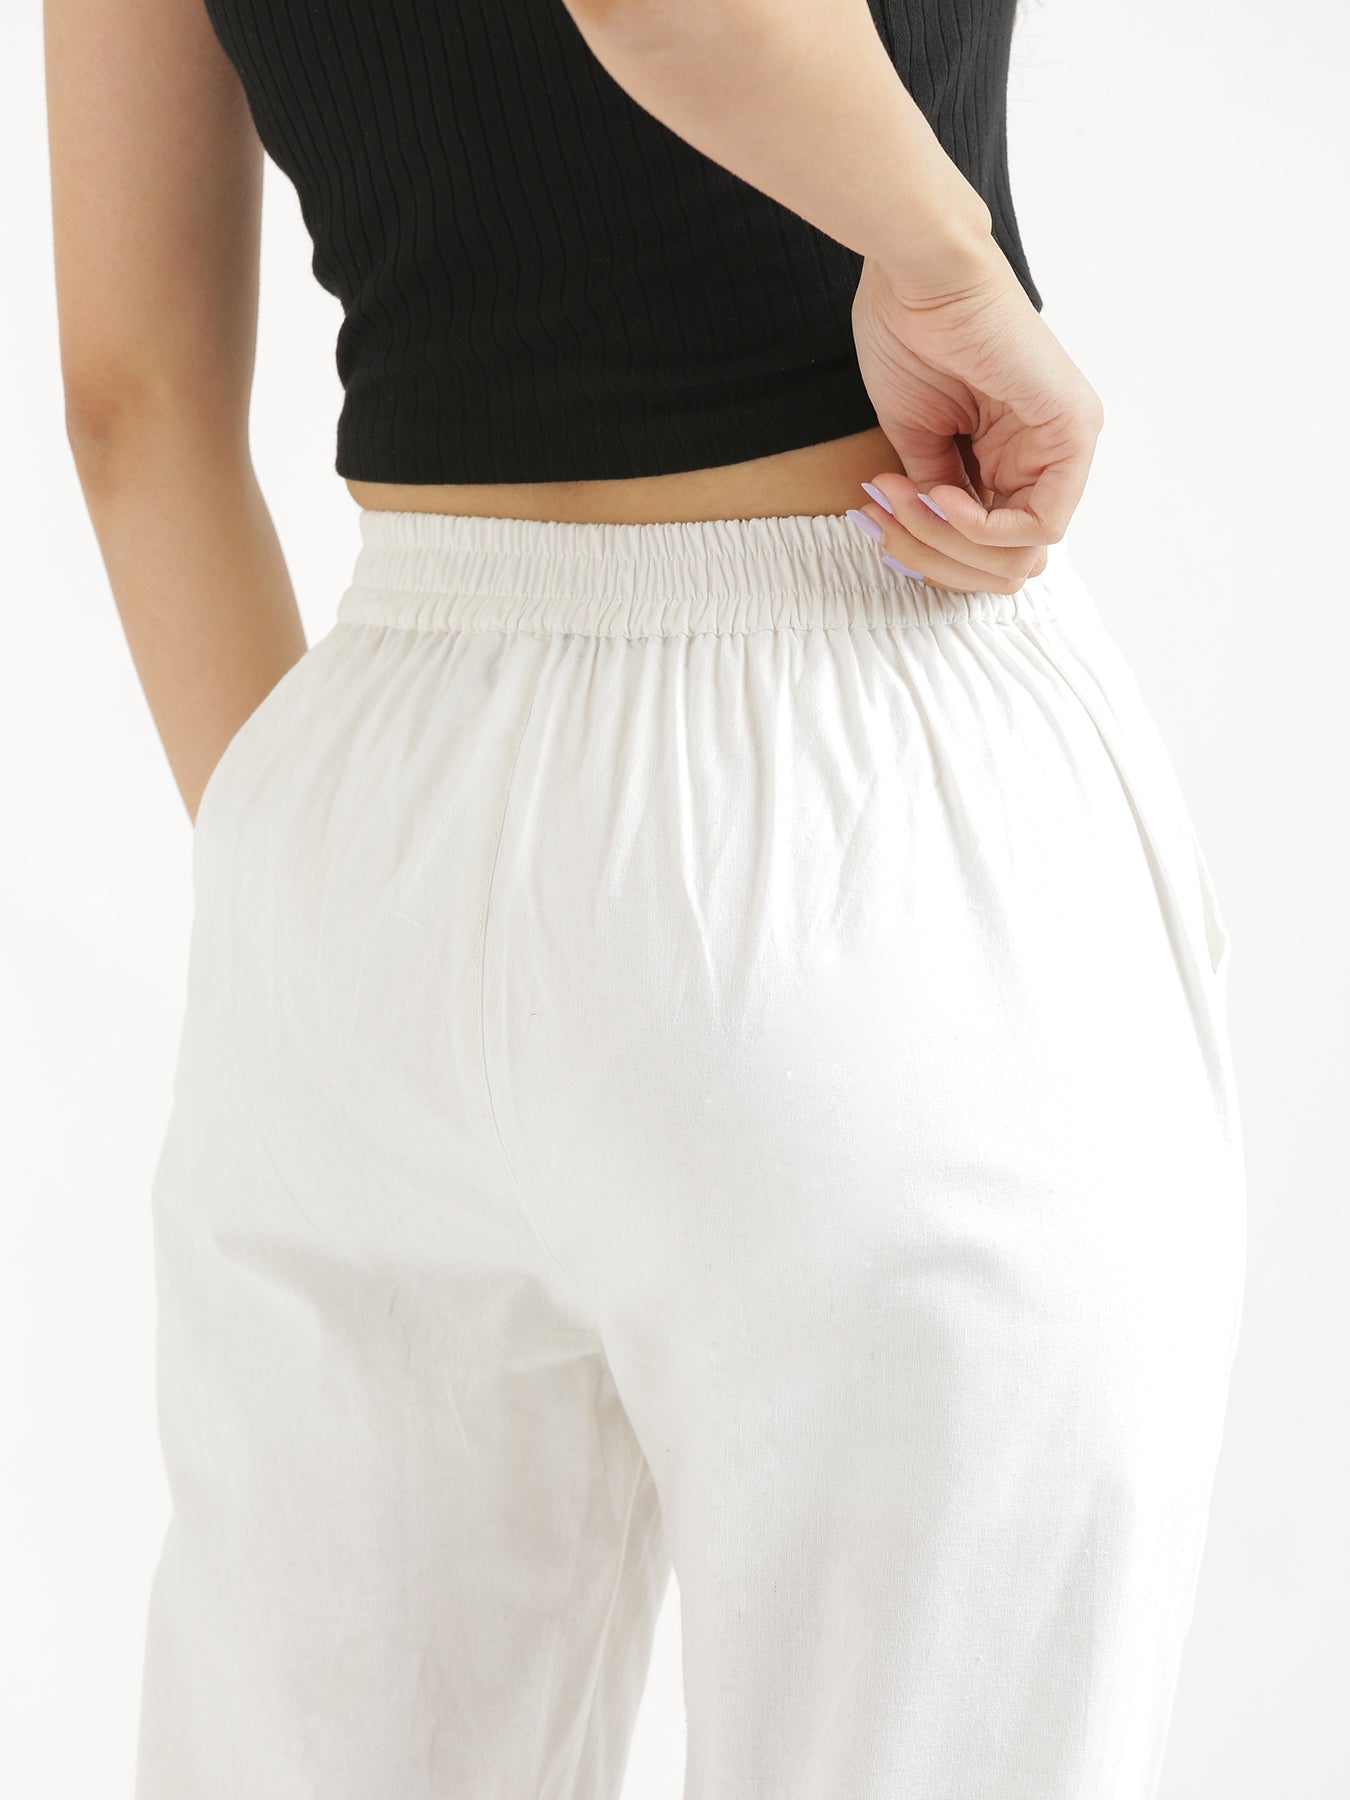 Buy Soch White Cotton Pants for Women Online @ Tata CLiQ